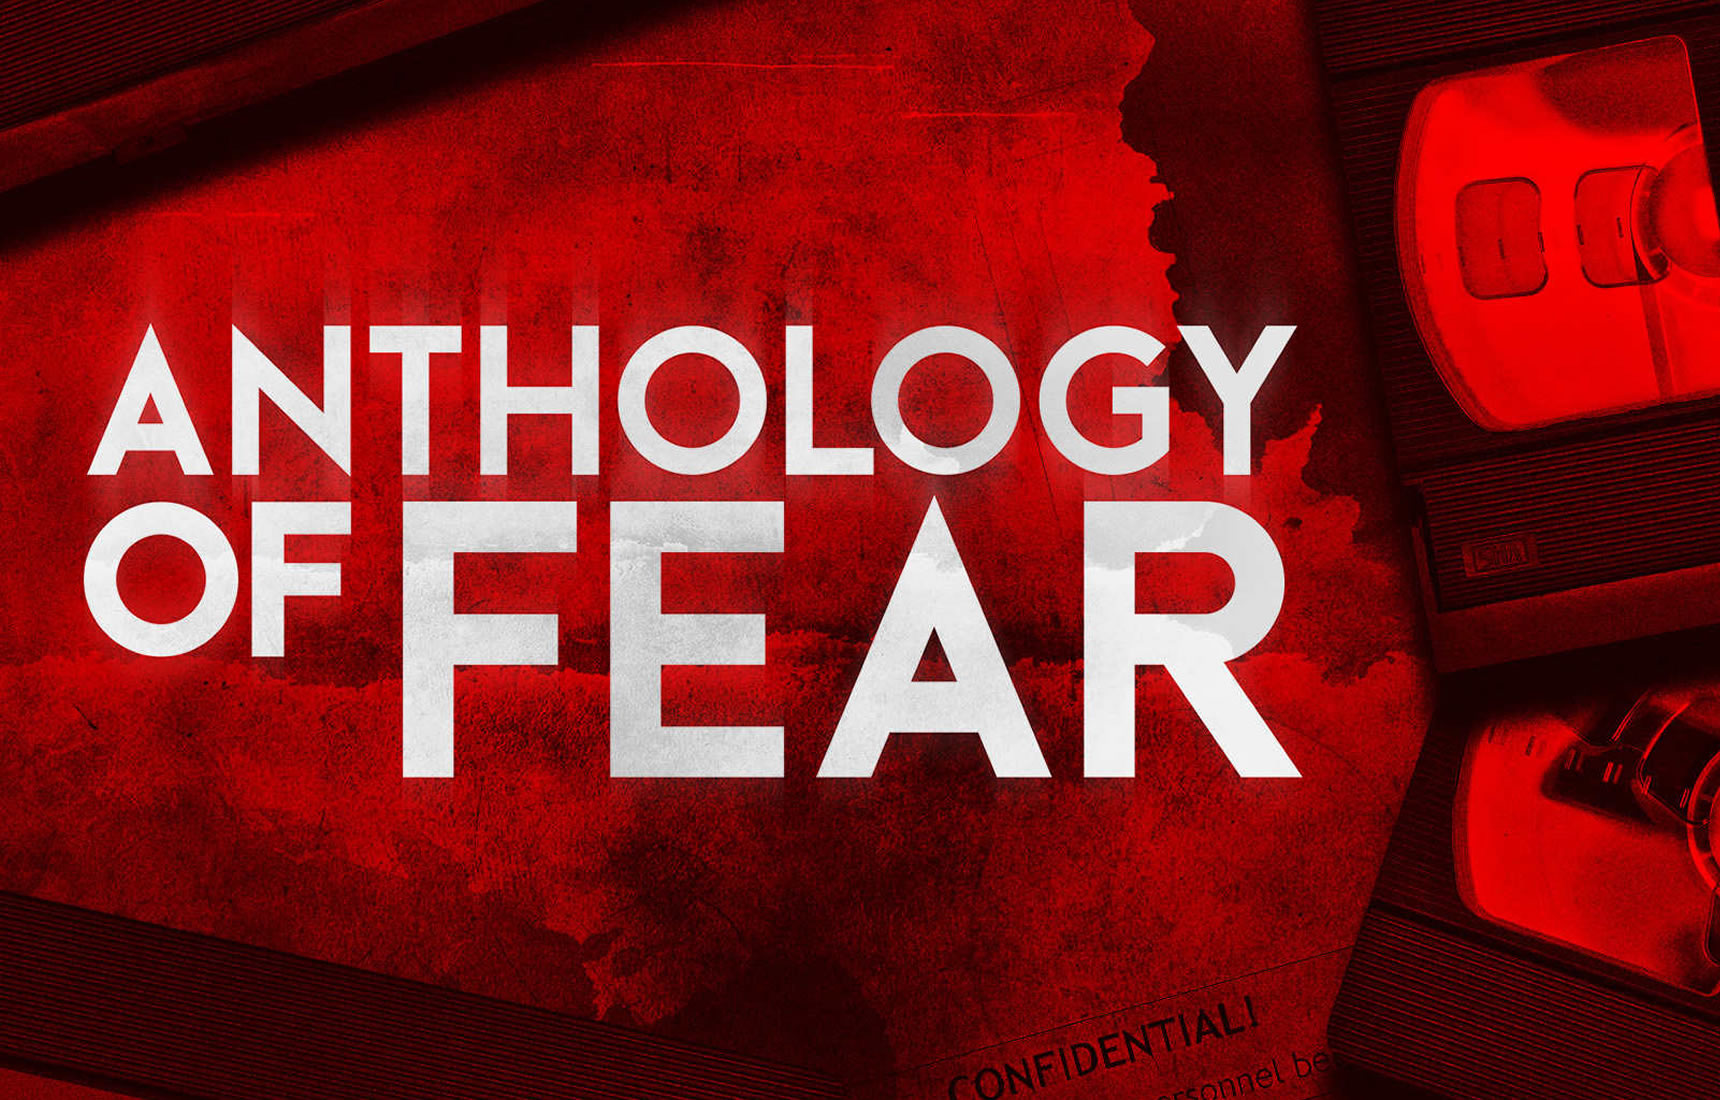 Anthology of Fear Xbox